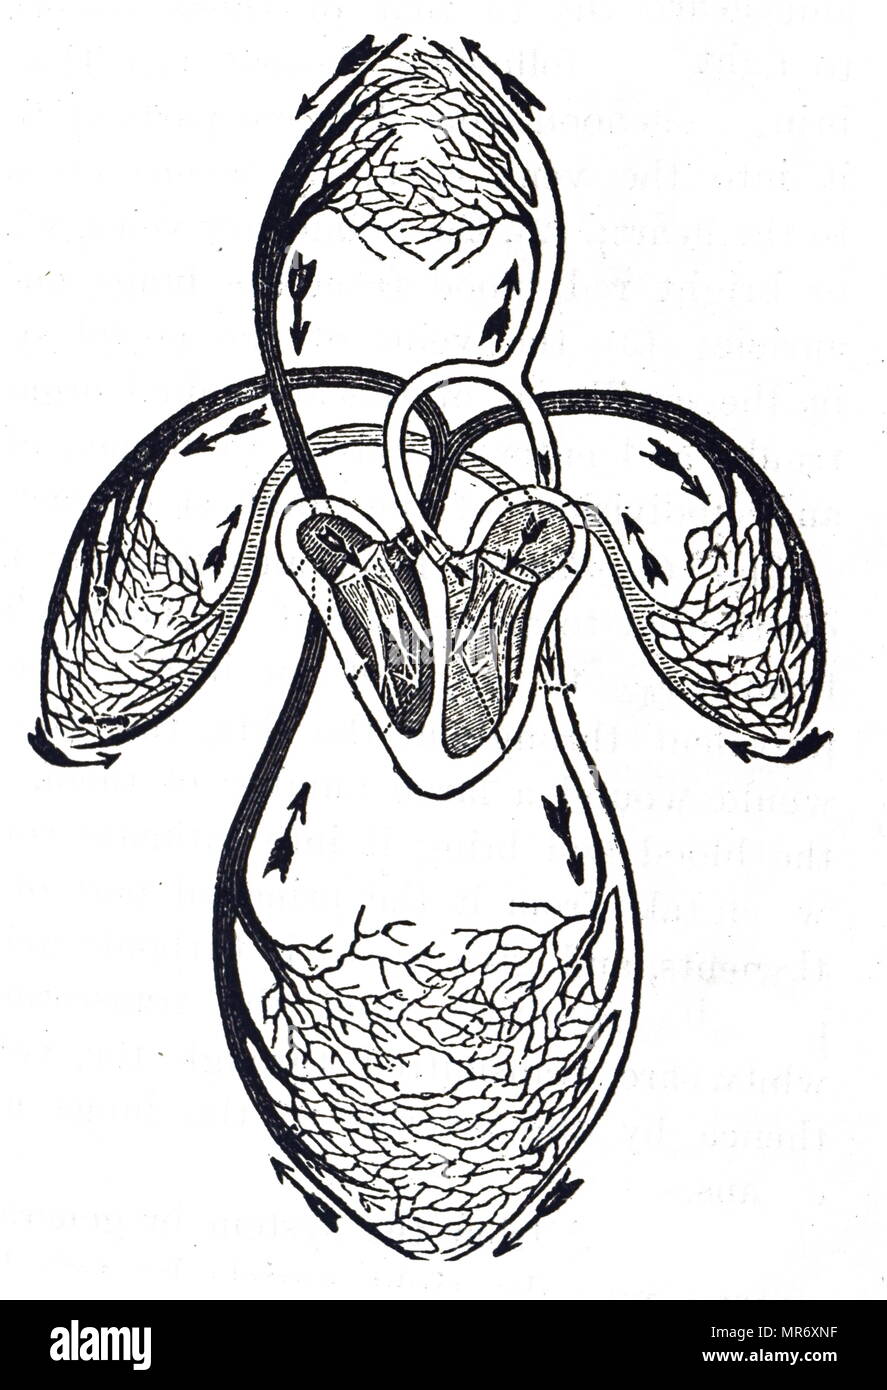 Diagramm der Zirkulation des Blutes als nach William Harvey's Arbeit verstanden, das Blut aus dem linken Ventrikel des Herzens durch die aorta und die Rückkehr zum Herzen über die Vena cava auf der rechten Ohrmuschel: Es hat jetzt die größere Verbreitung abgeschlossen. Es geht auf den rechten Ventrikel und aus in die Lungenschlagader und verpflichtet sich, den kleinen Kreislauf (LUNGENKREISLAUF) und zurück zum Herzen auf der linken Ohrmuschel. William Harvey (1578-1657) ein englischer Arzt, der wegweisenden Beiträge in der Anatomie und Physiologie. Vom 20. Jahrhundert Stockfoto